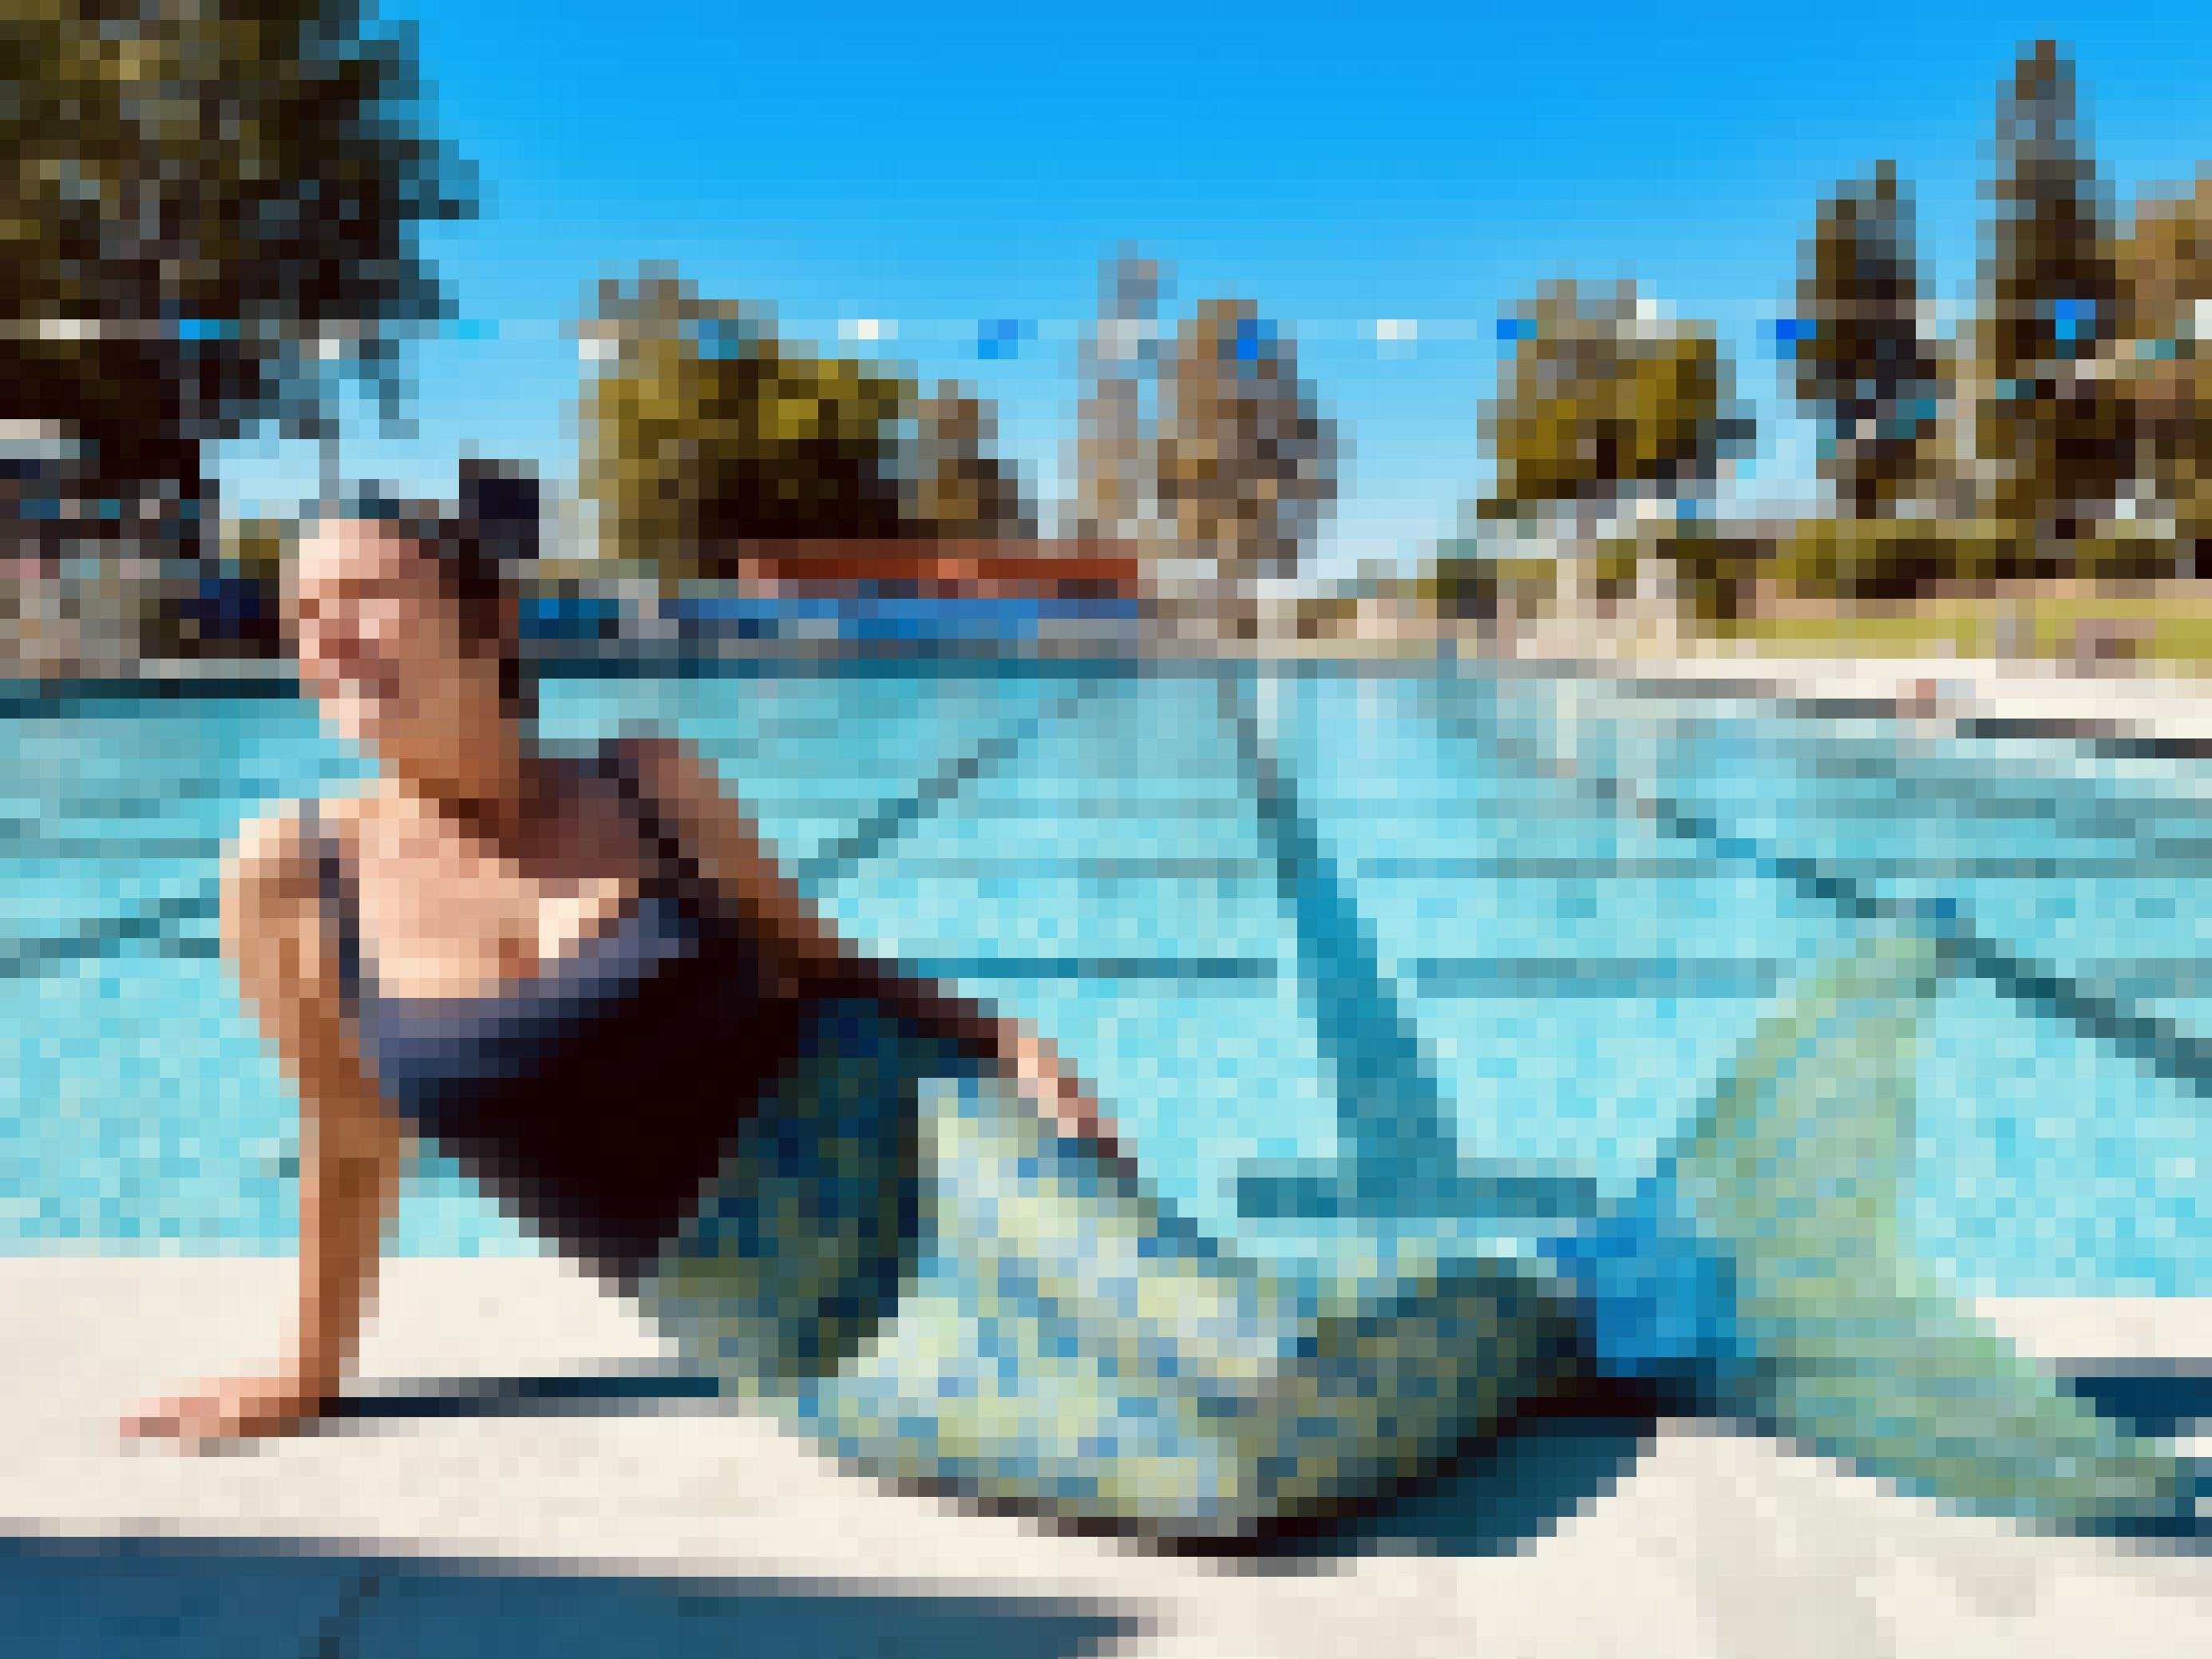 Frau Mitte 50 in Meerjungfrauen-Kostüm, grün-blauer Schwanzflosse und blauer Badeanzug, posiert am Rand eines öffentlichen Schwimmbads